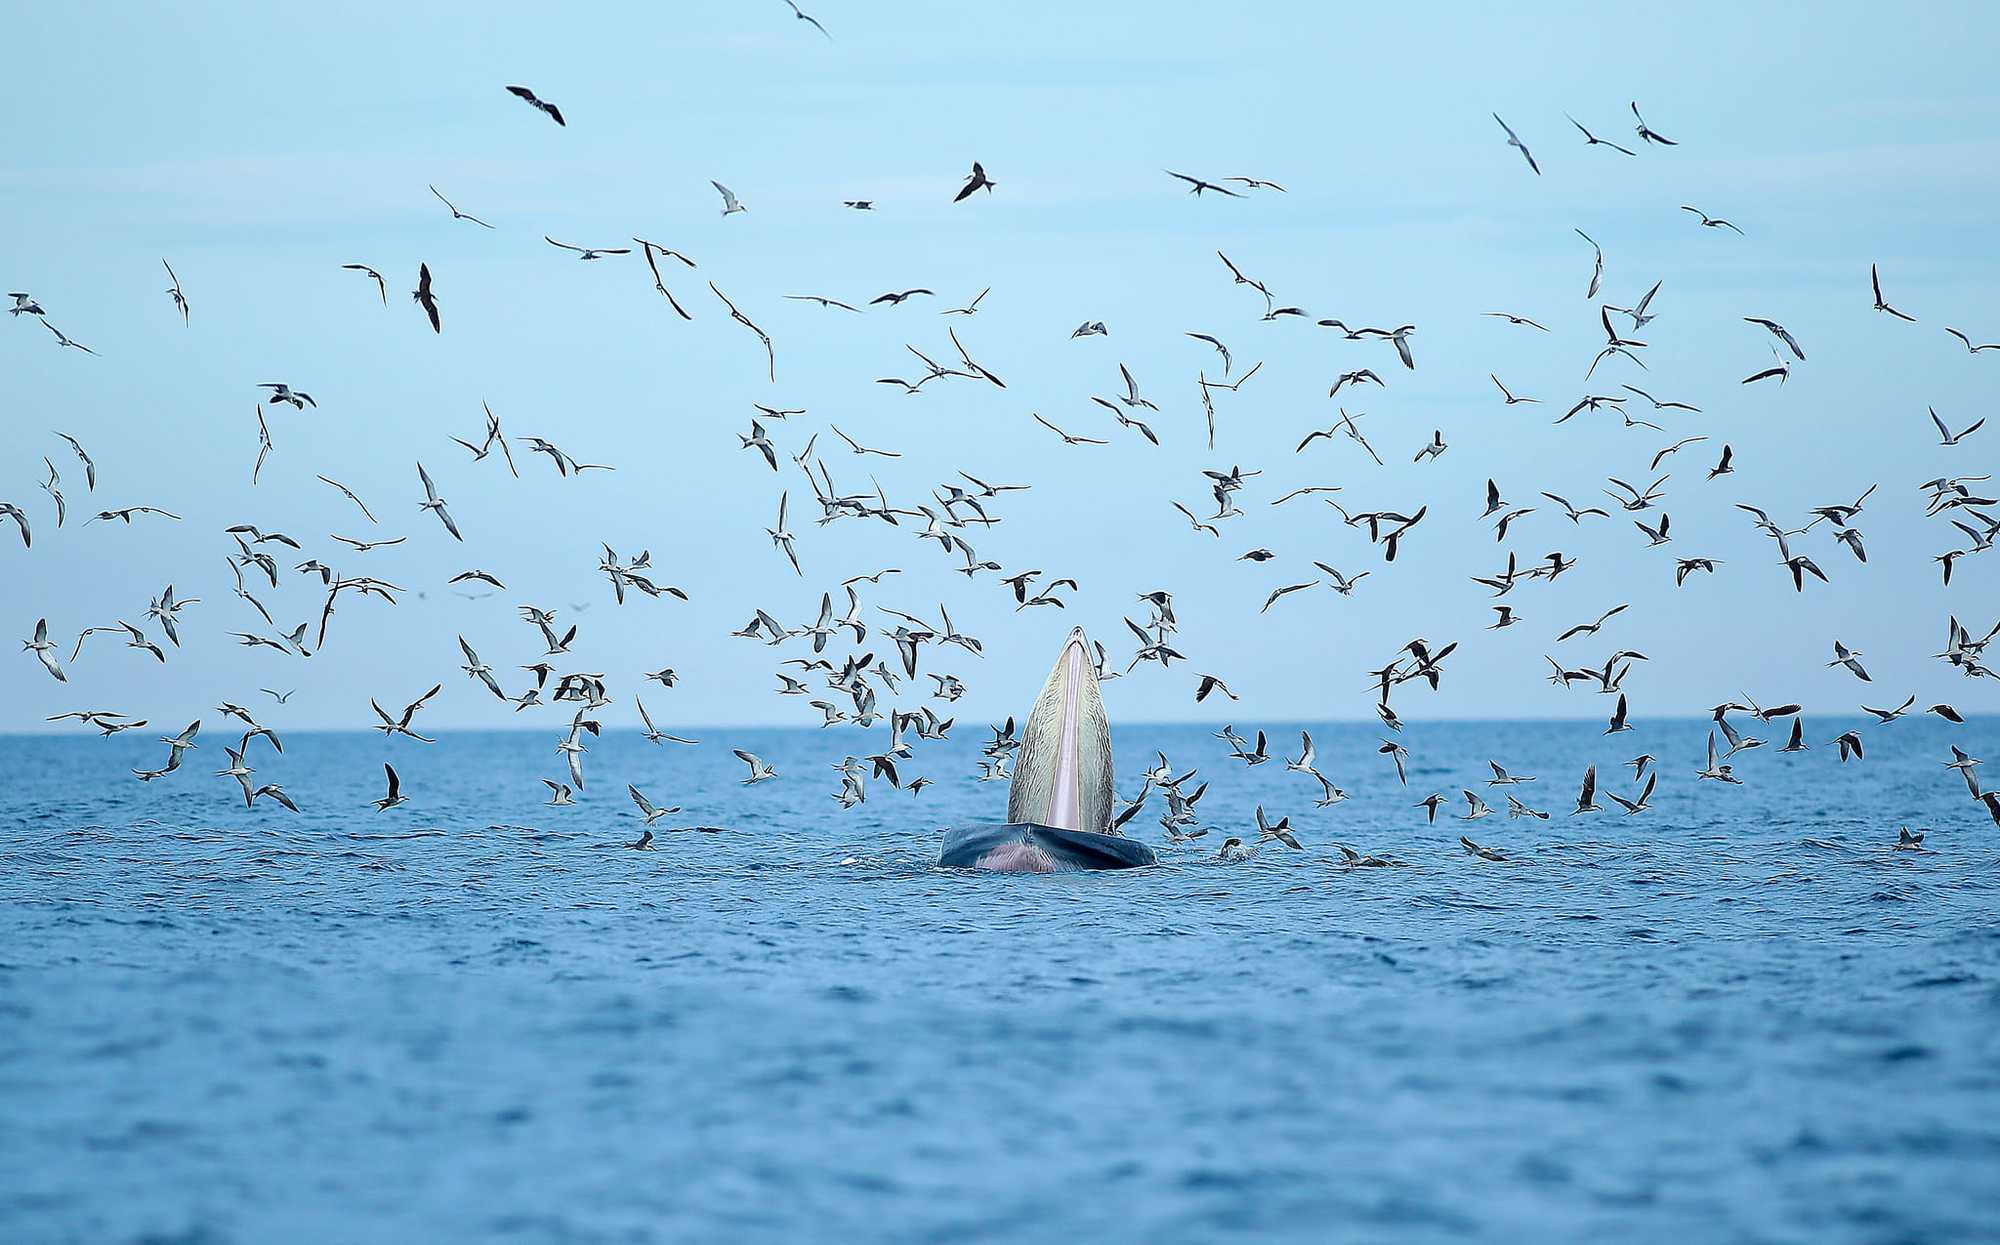 Thích thú, vỡ òa với khoảnh khắc chứng kiến cá voi xanh săn mồi trên biển Đề Gi - Ảnh 2.